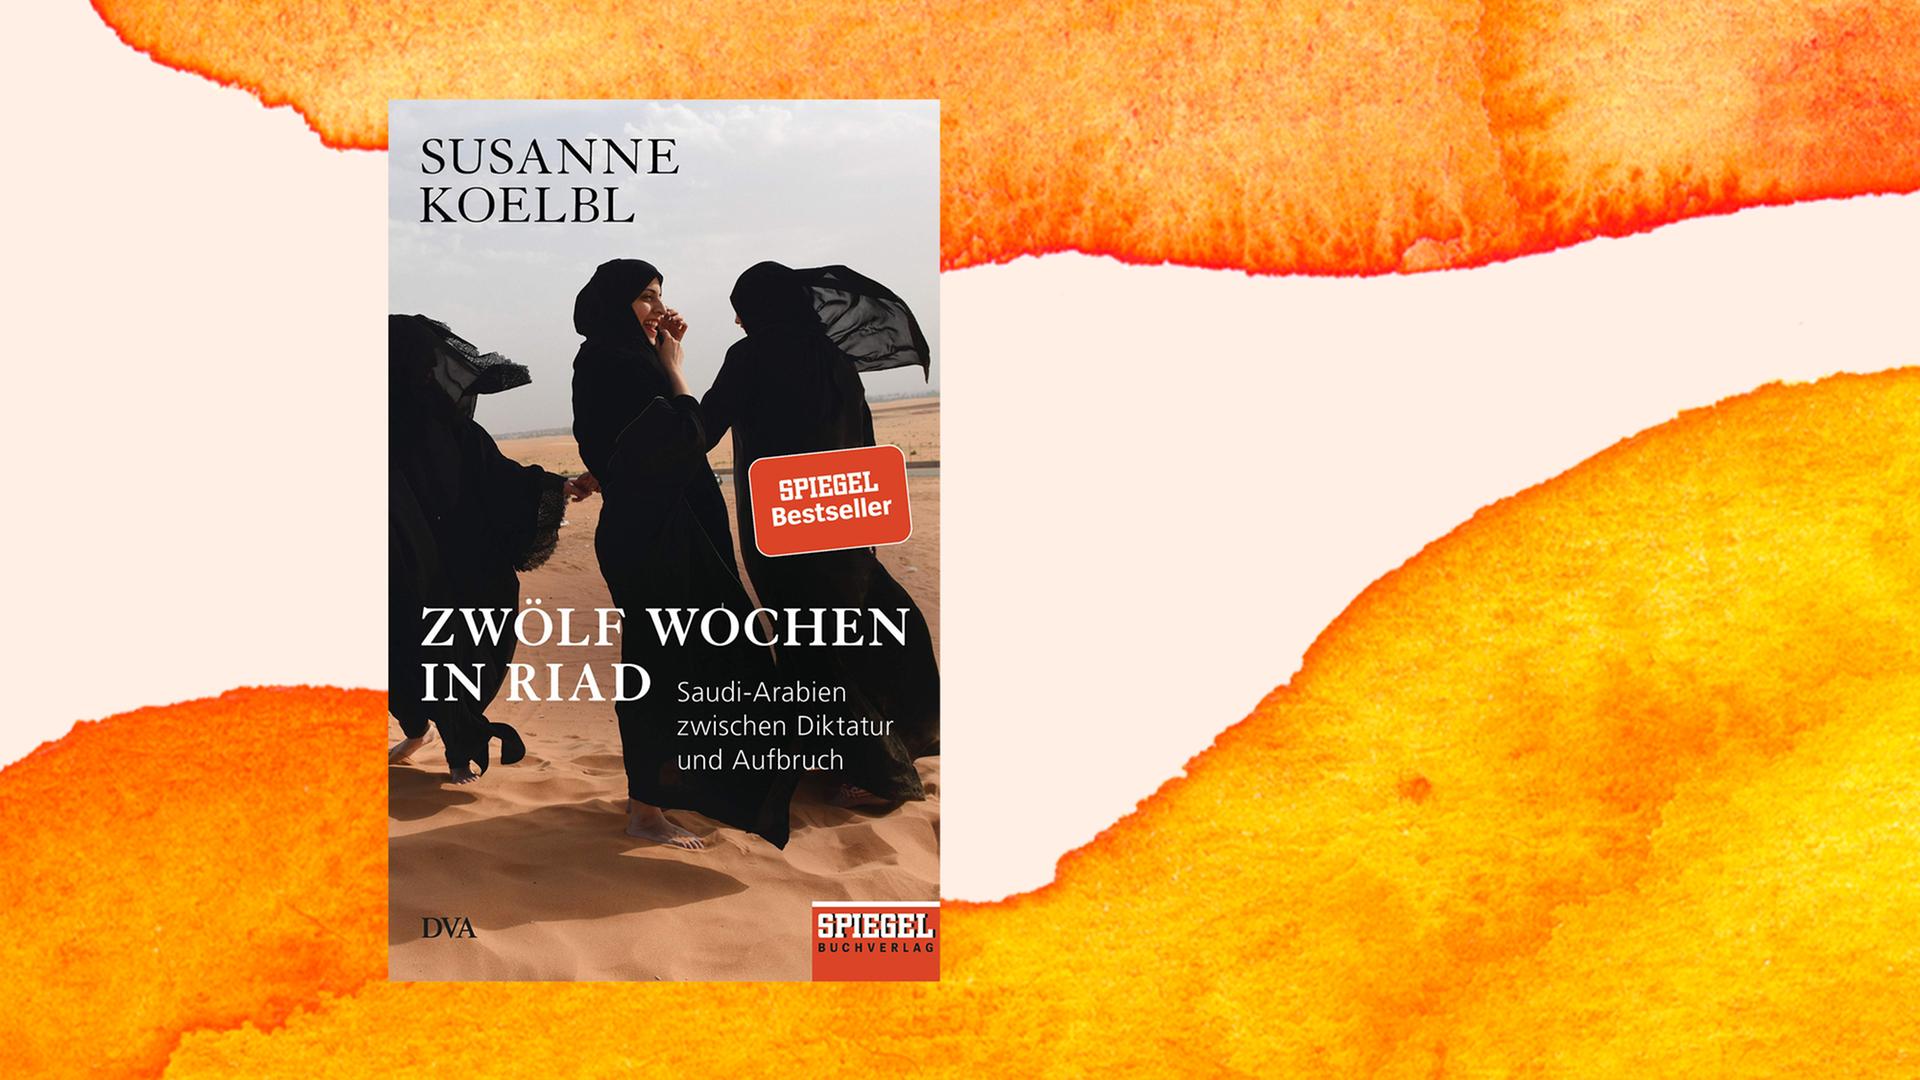 Das Buchcover zeigt schwarz verschleierte Frauen, die in der Wüste tanzen.